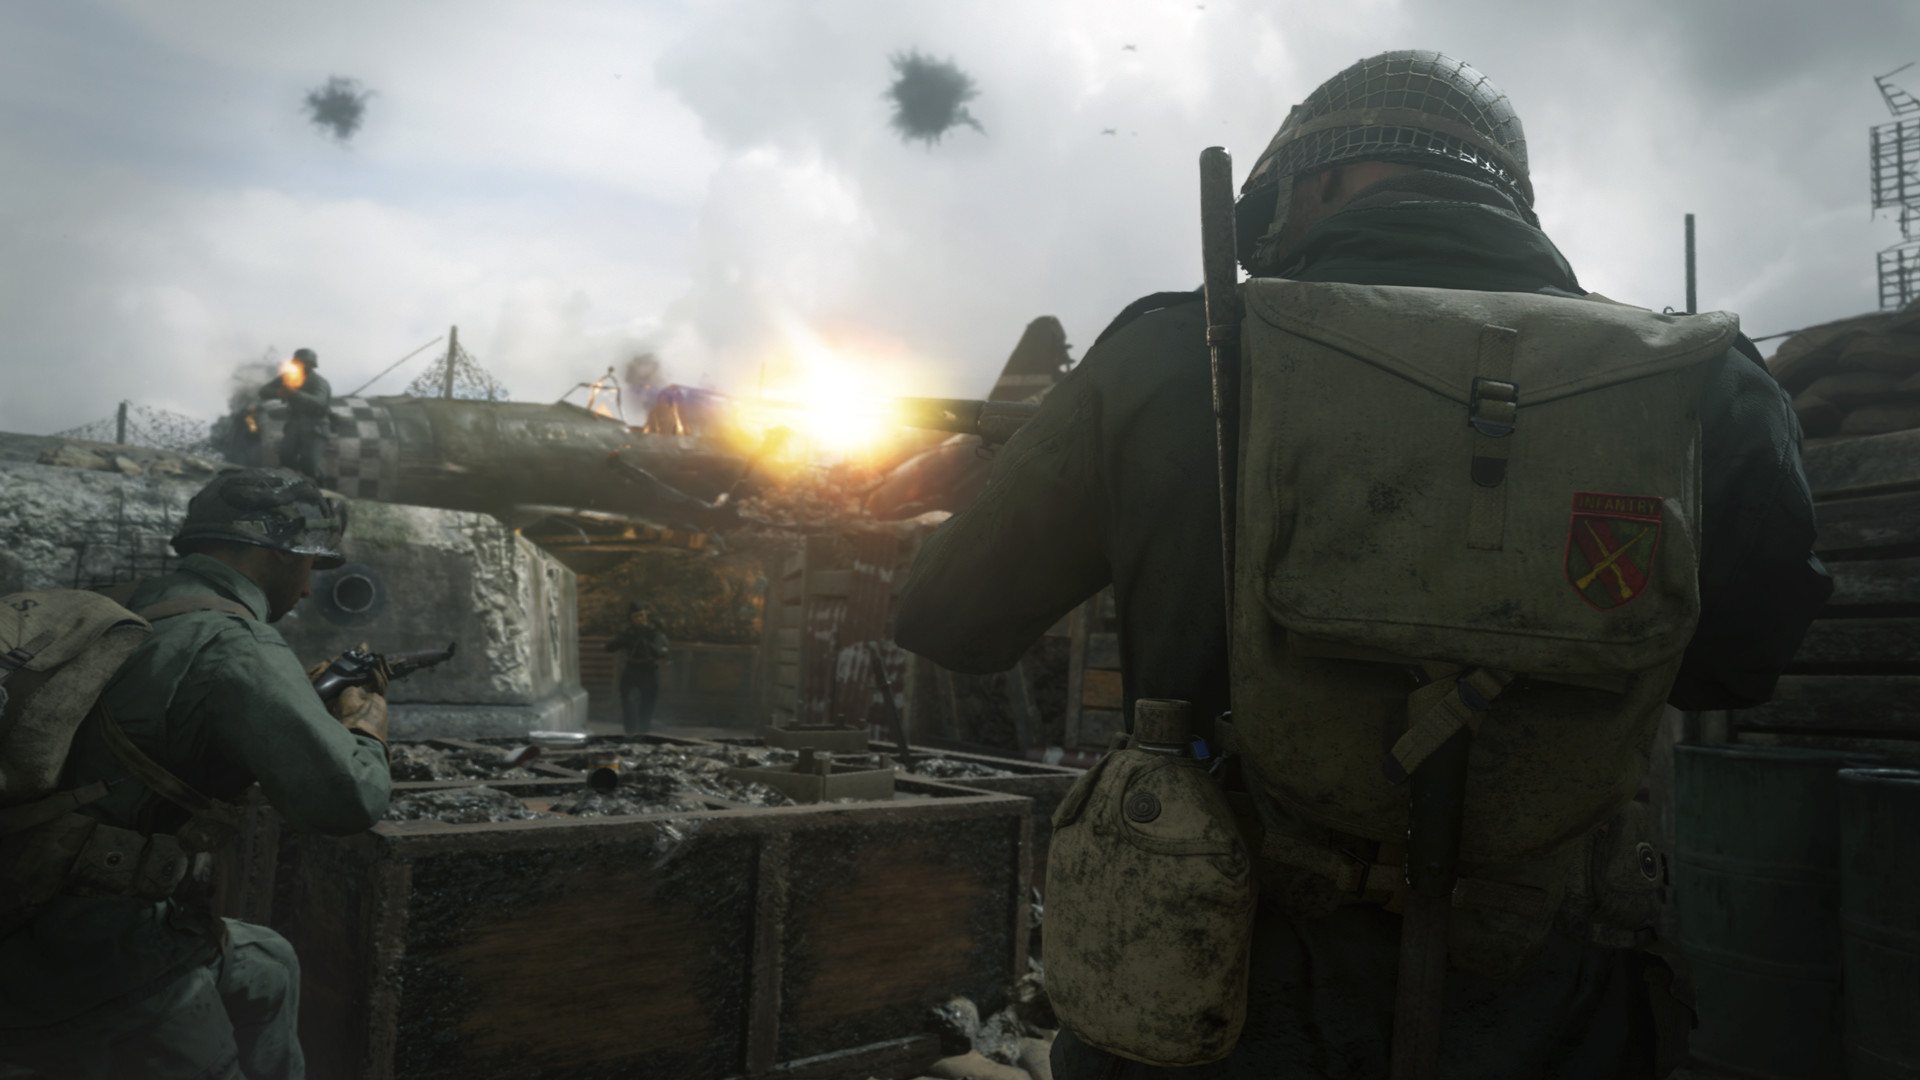 Call of Duty: WW2 soldiers firing in battle